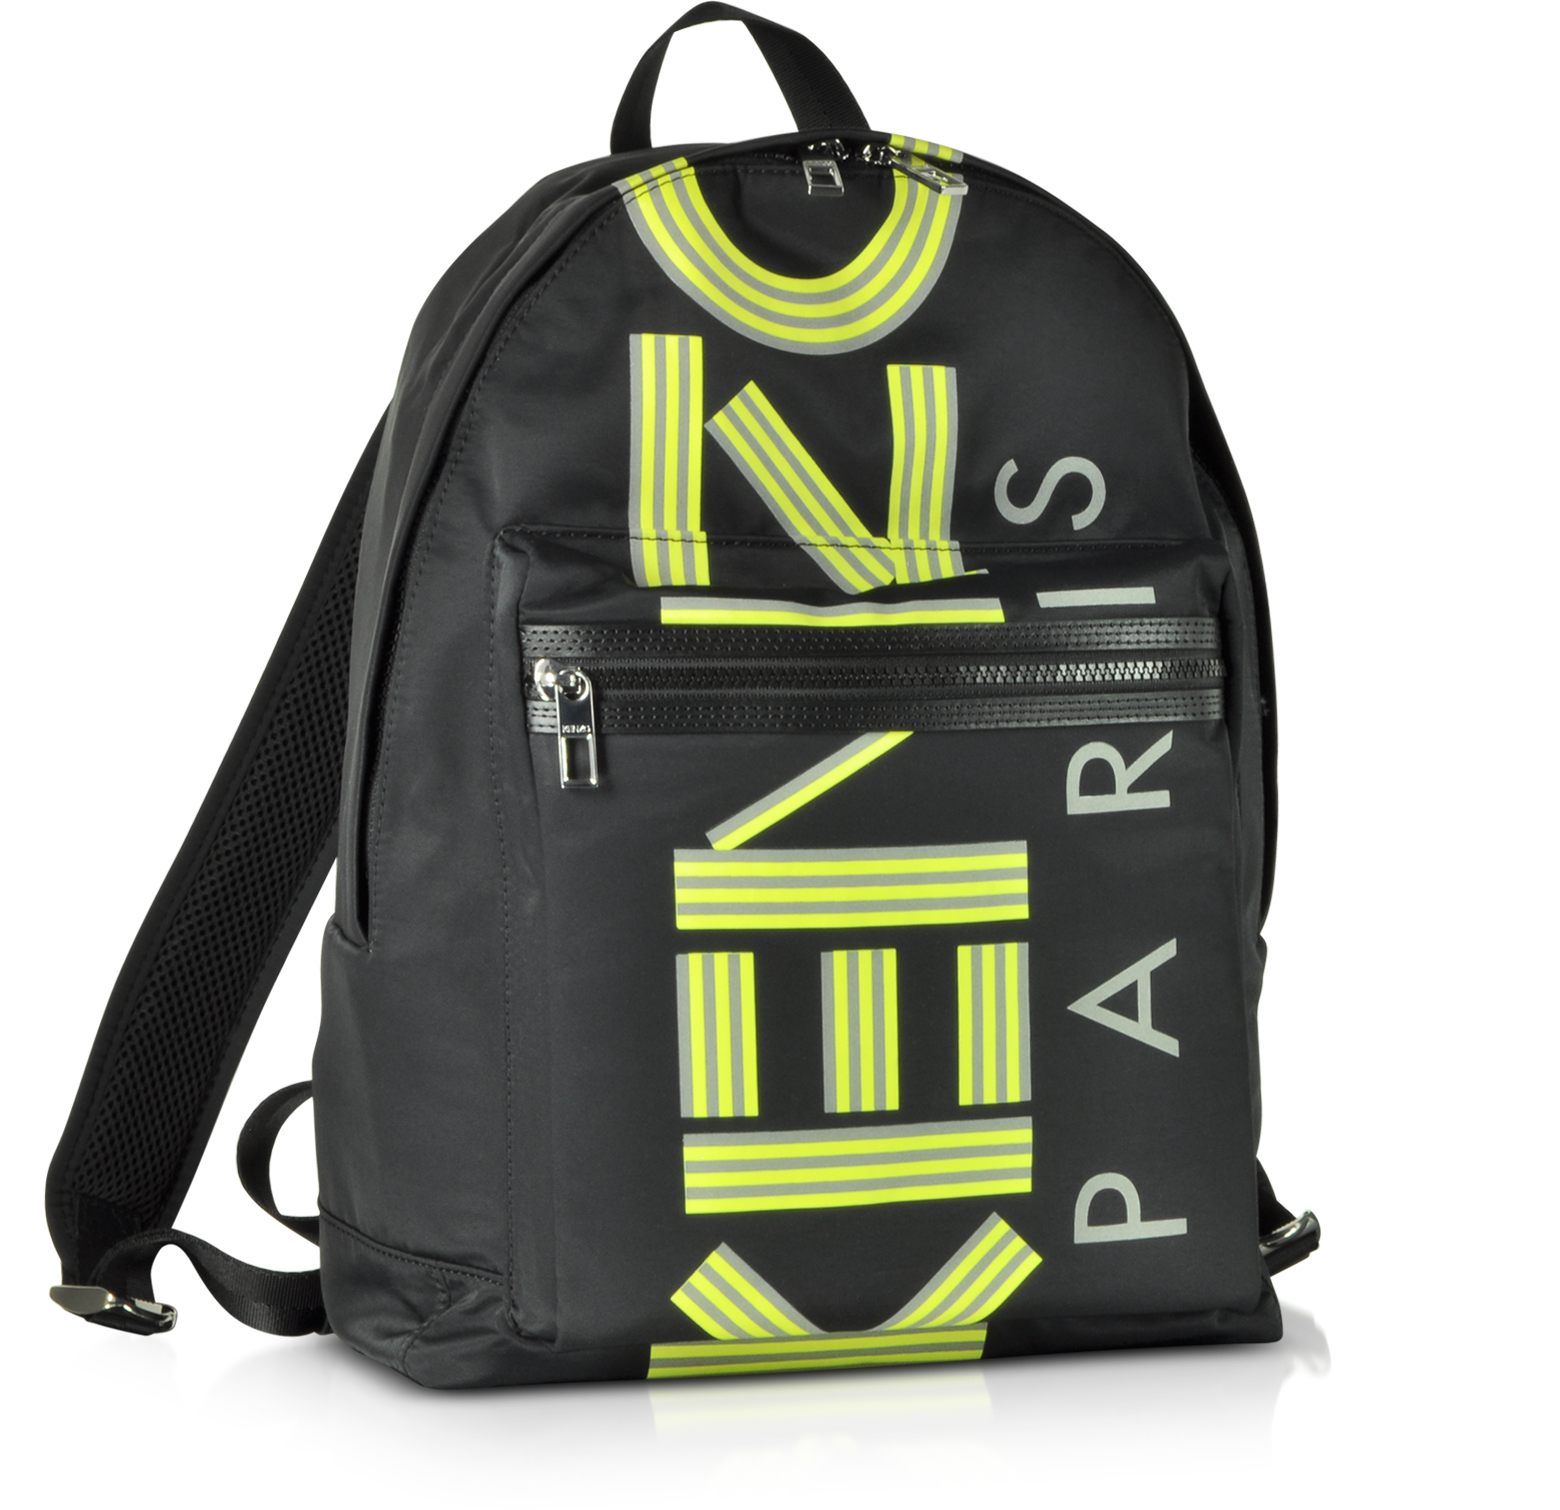 kenzo nylon backpack